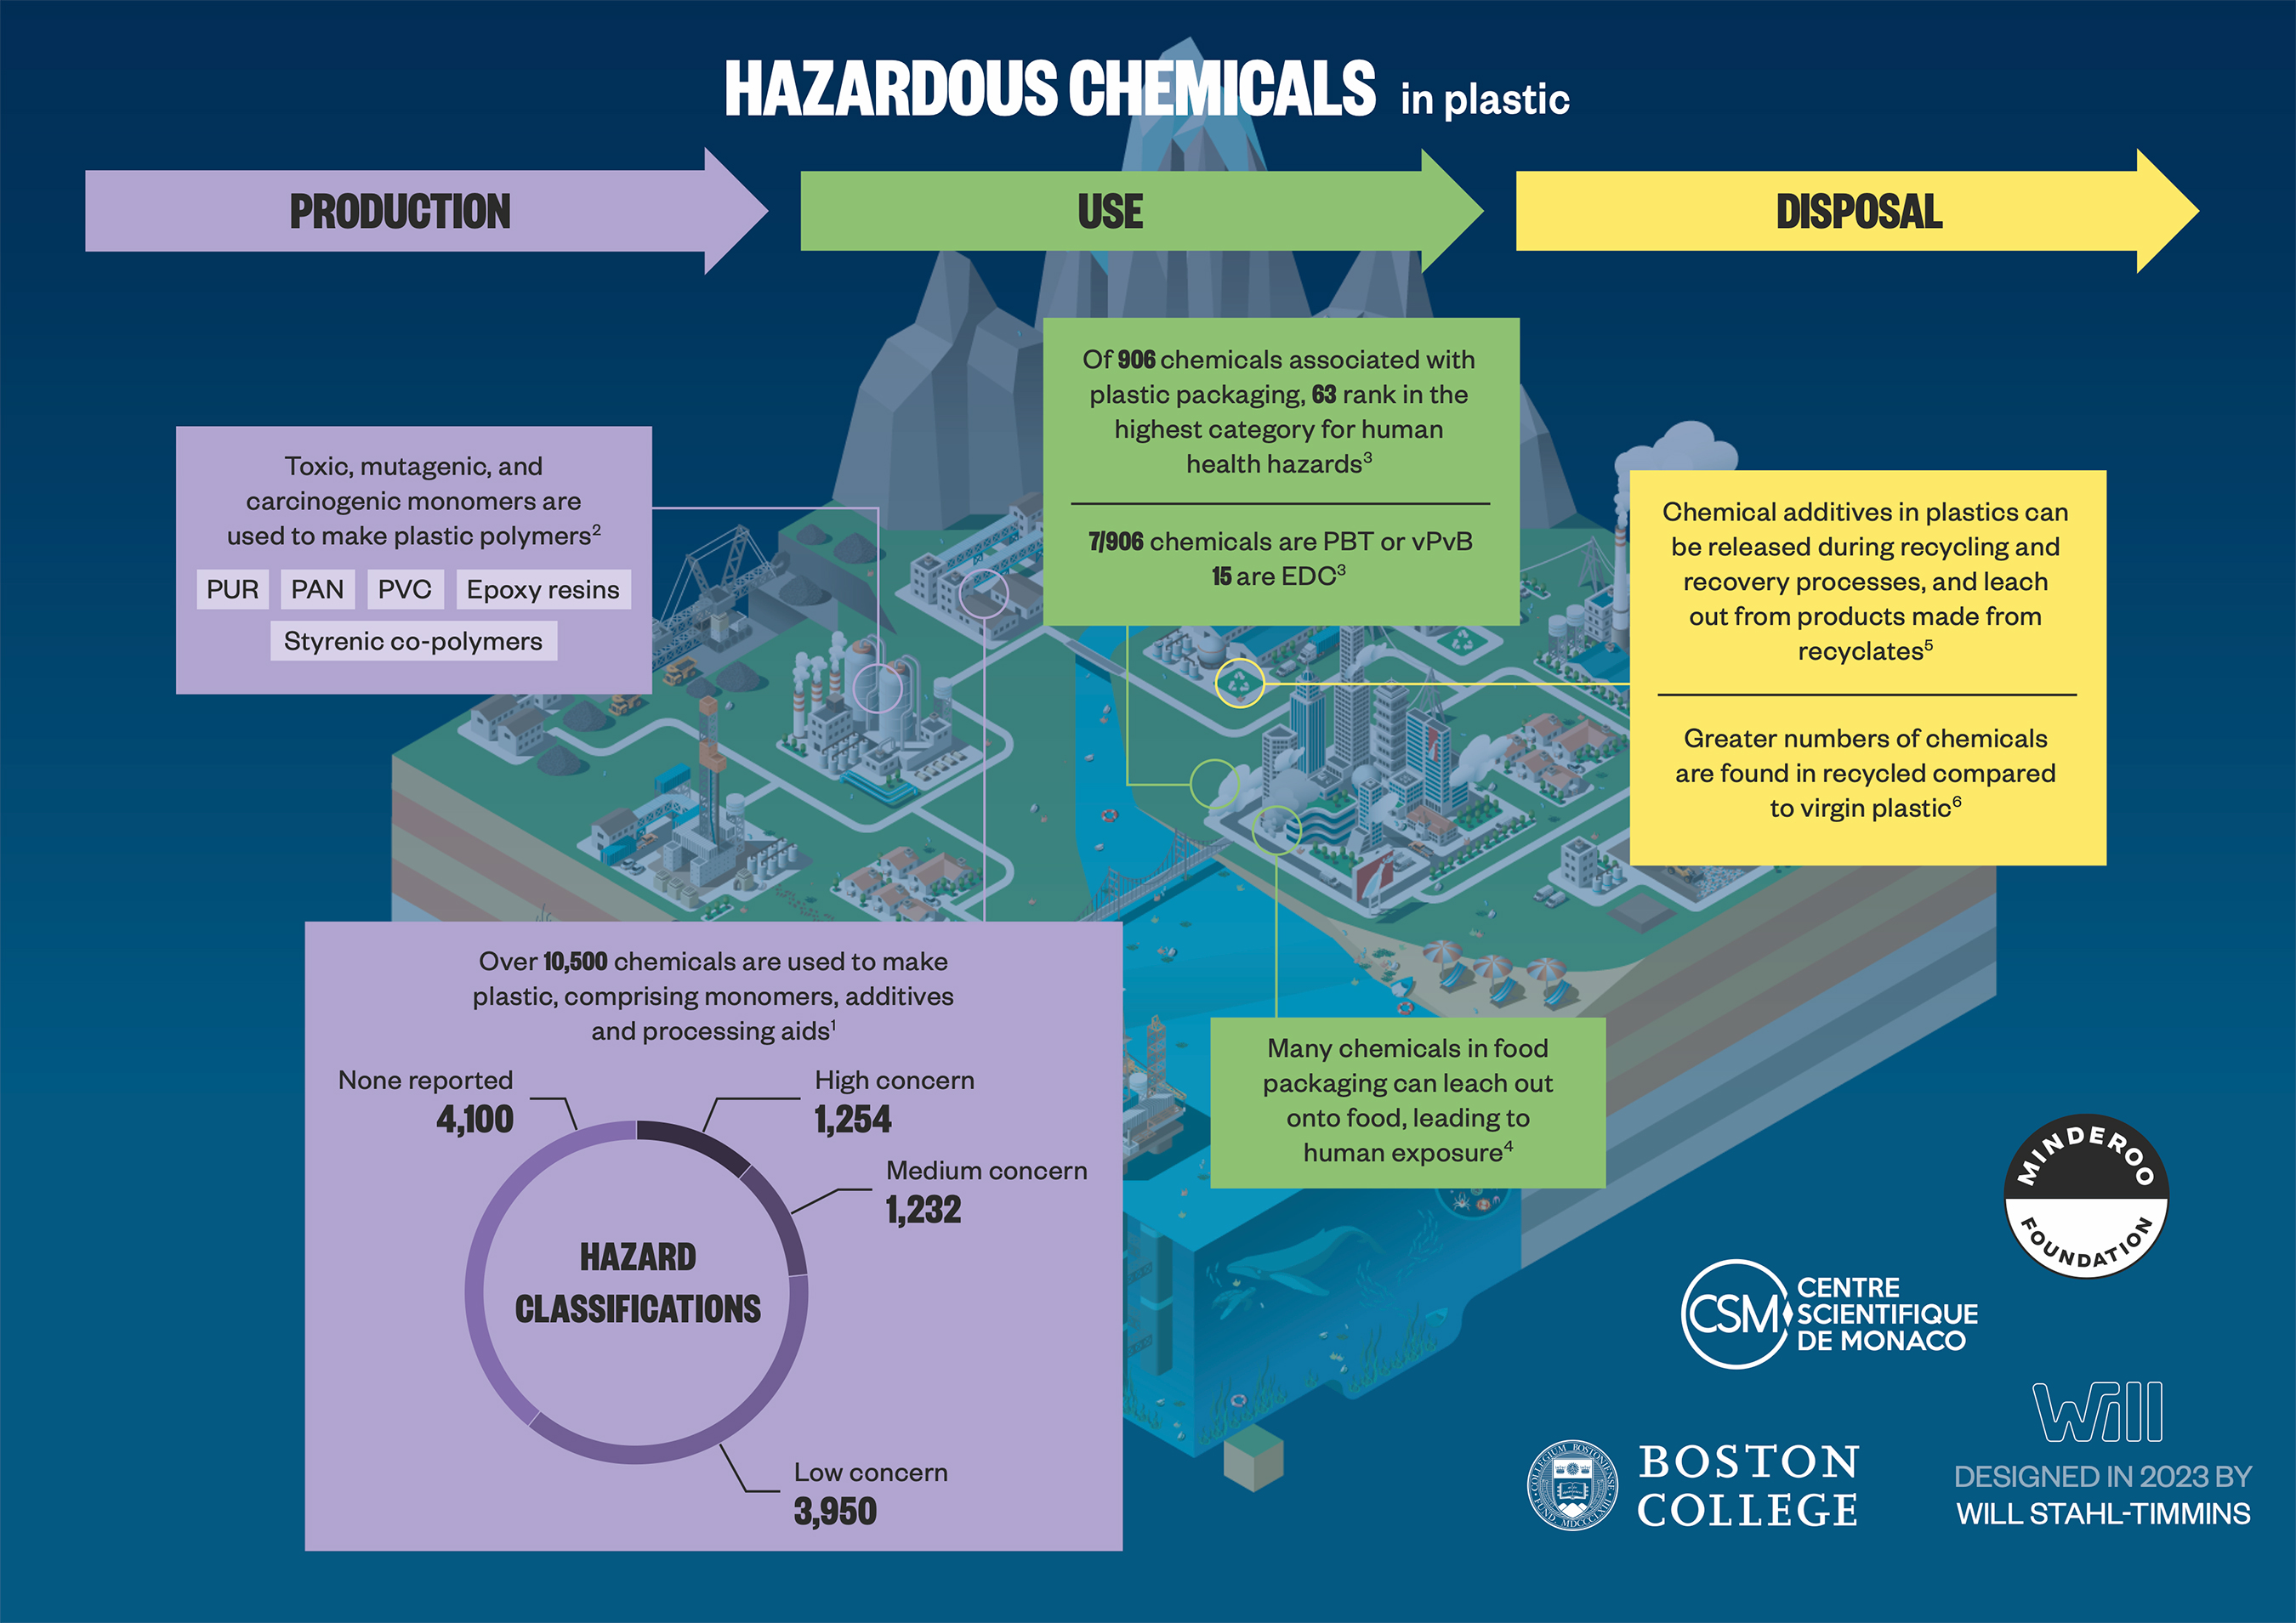 Hazardous Chemicals in plastic